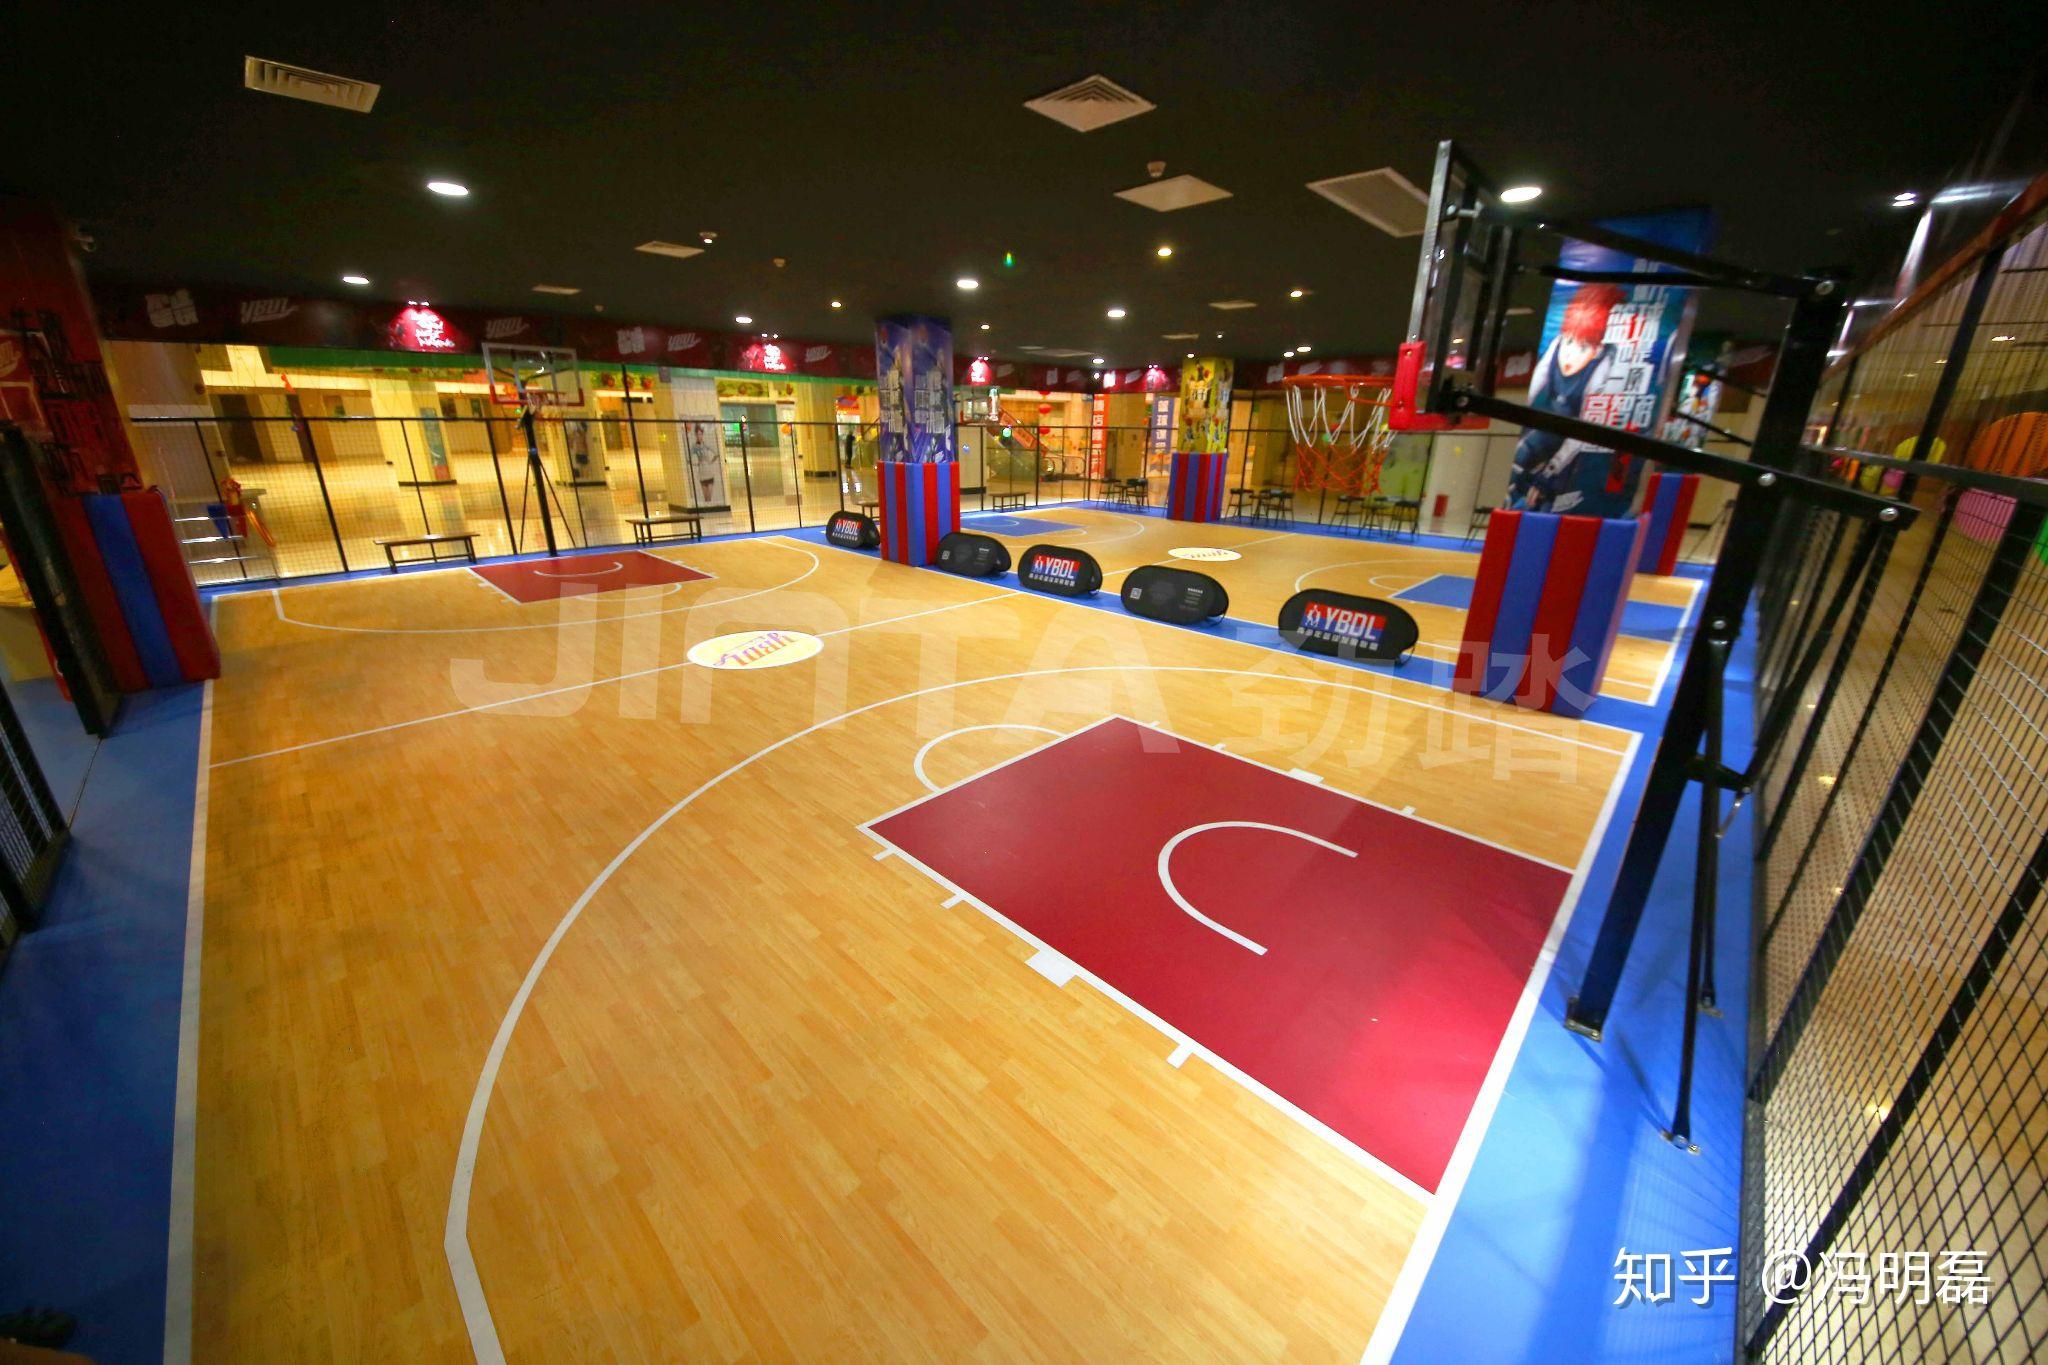 梦想开一间室内篮球馆,大概需要场地,装修,宣传和运营,在各个环节,有